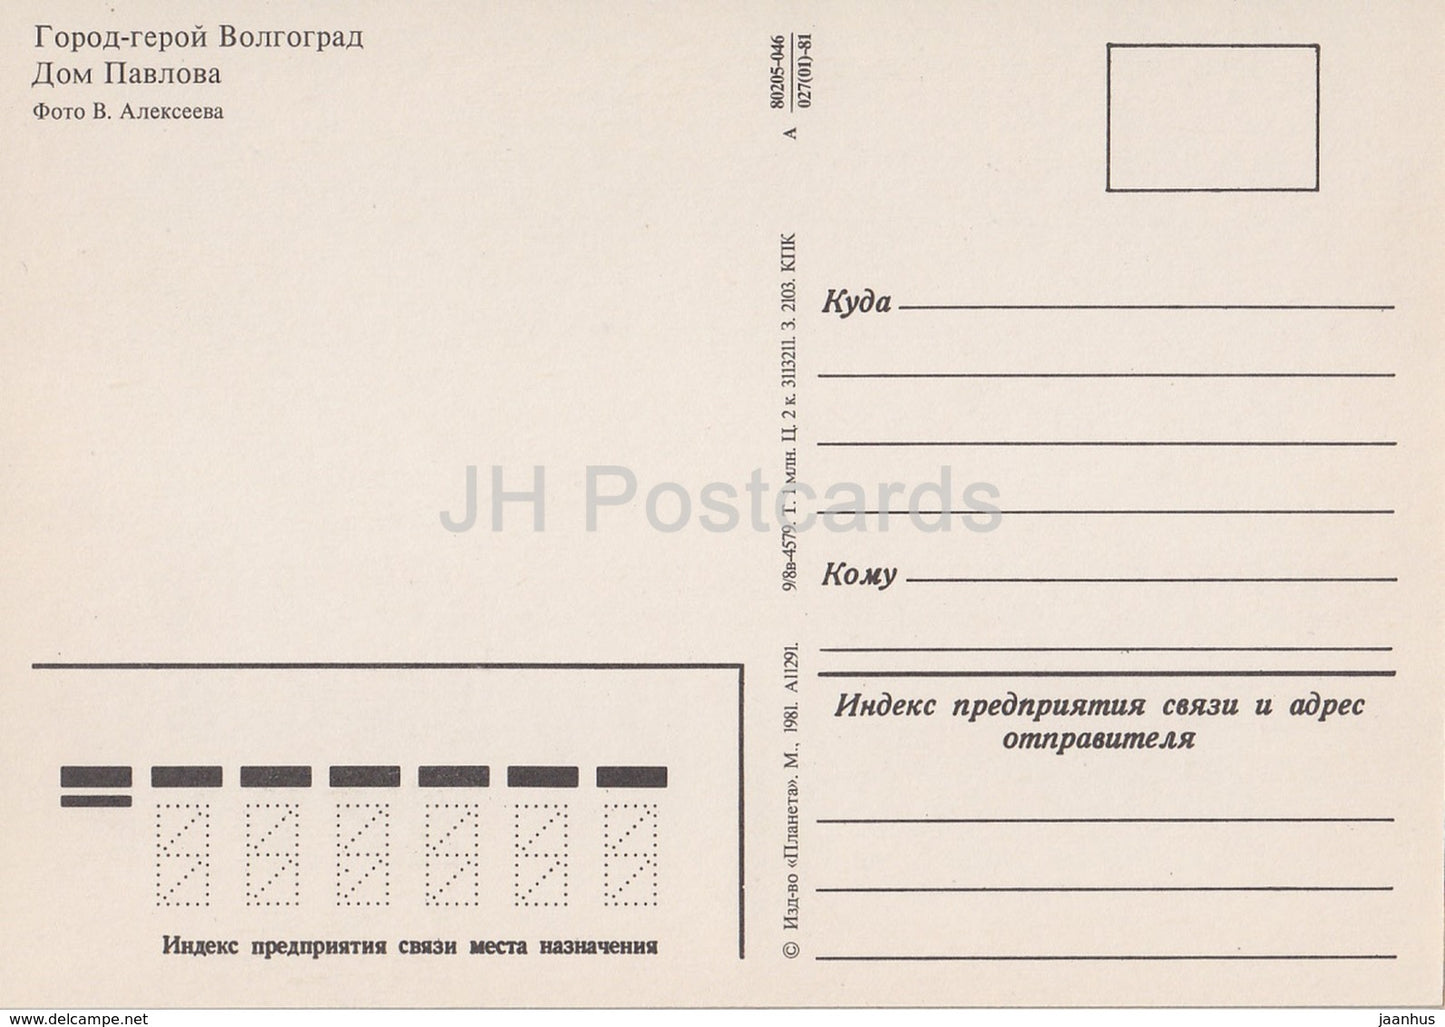 Wolgograd – Haus Pawlow – 1981 – Russland UdSSR – unbenutzt